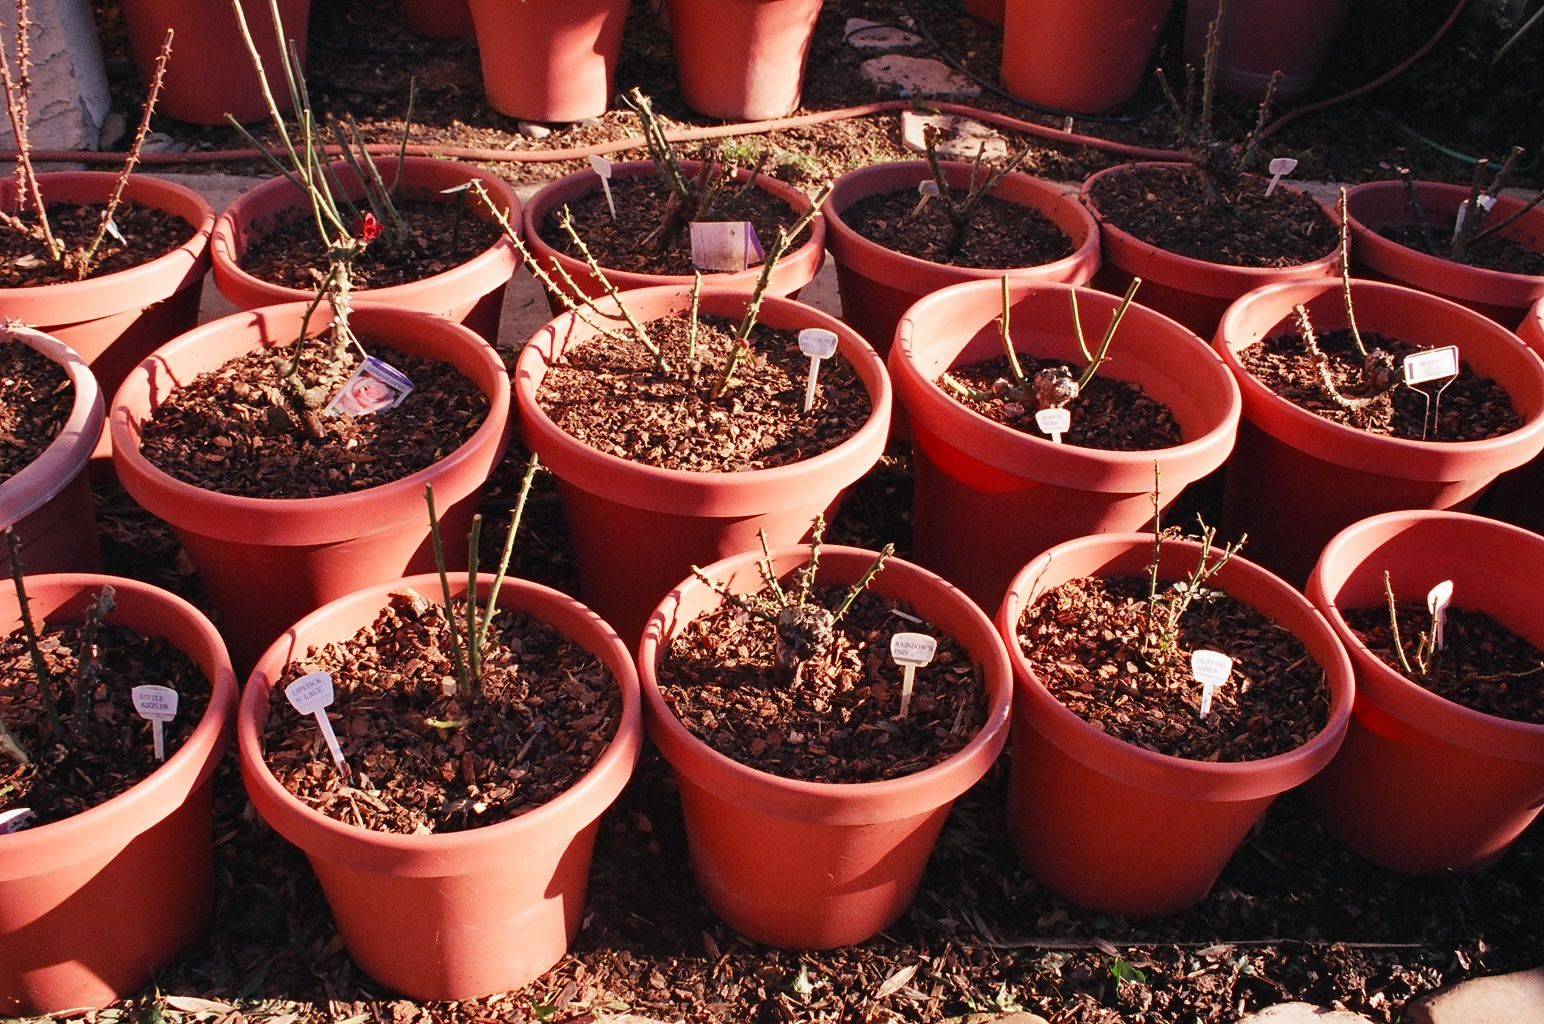 Выращивание роз в сибири: выбираем зимостойкие сорта + правила посадки и ухода